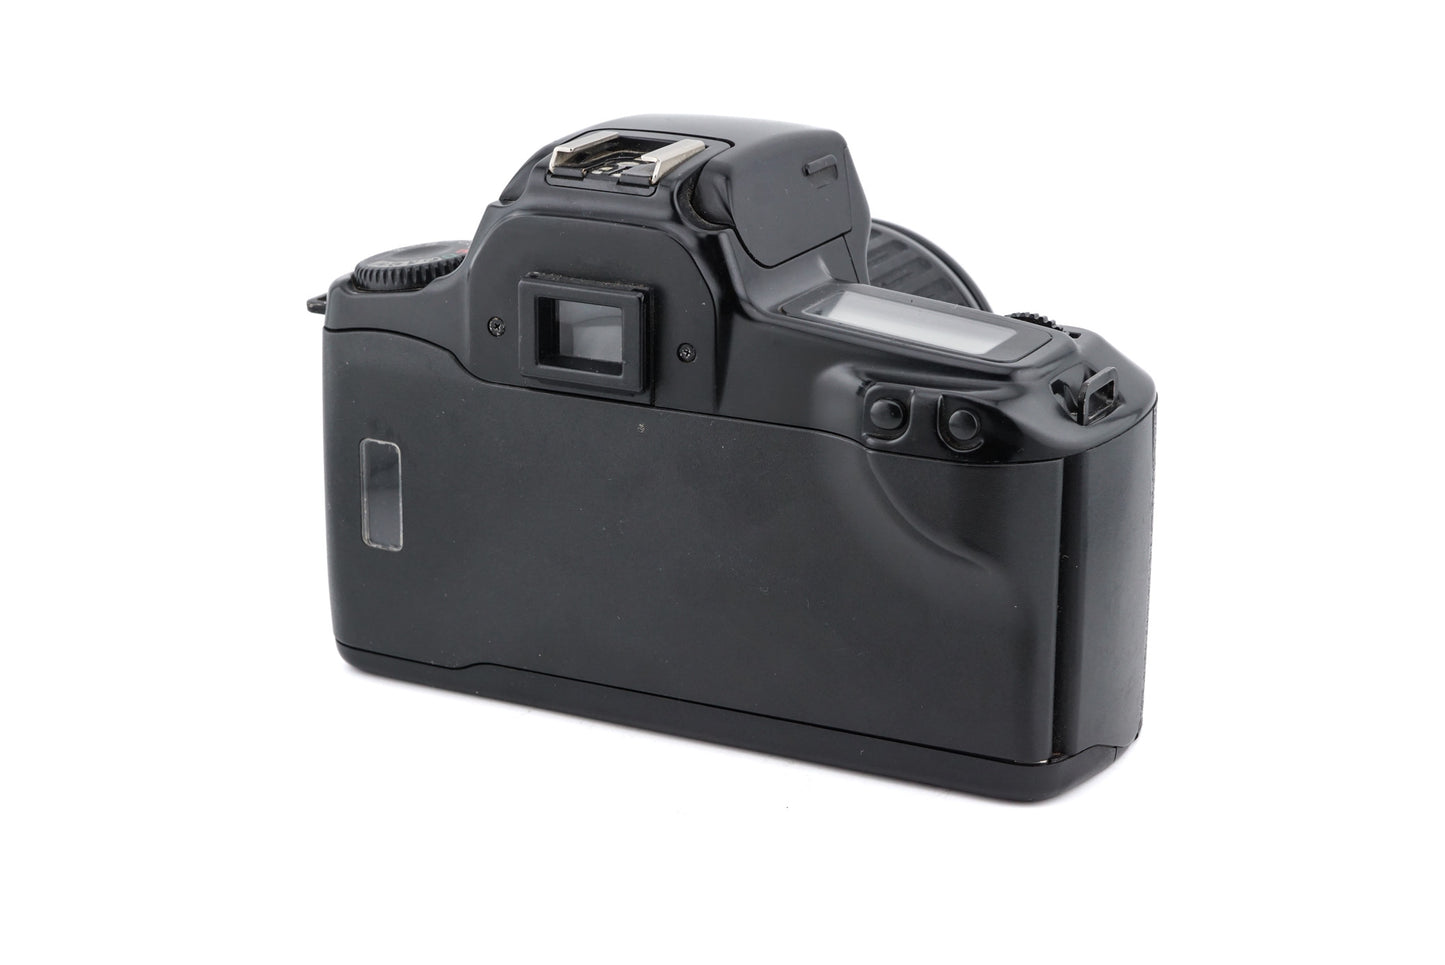 Canon EOS 1000F + 35-80mm f4-5.6